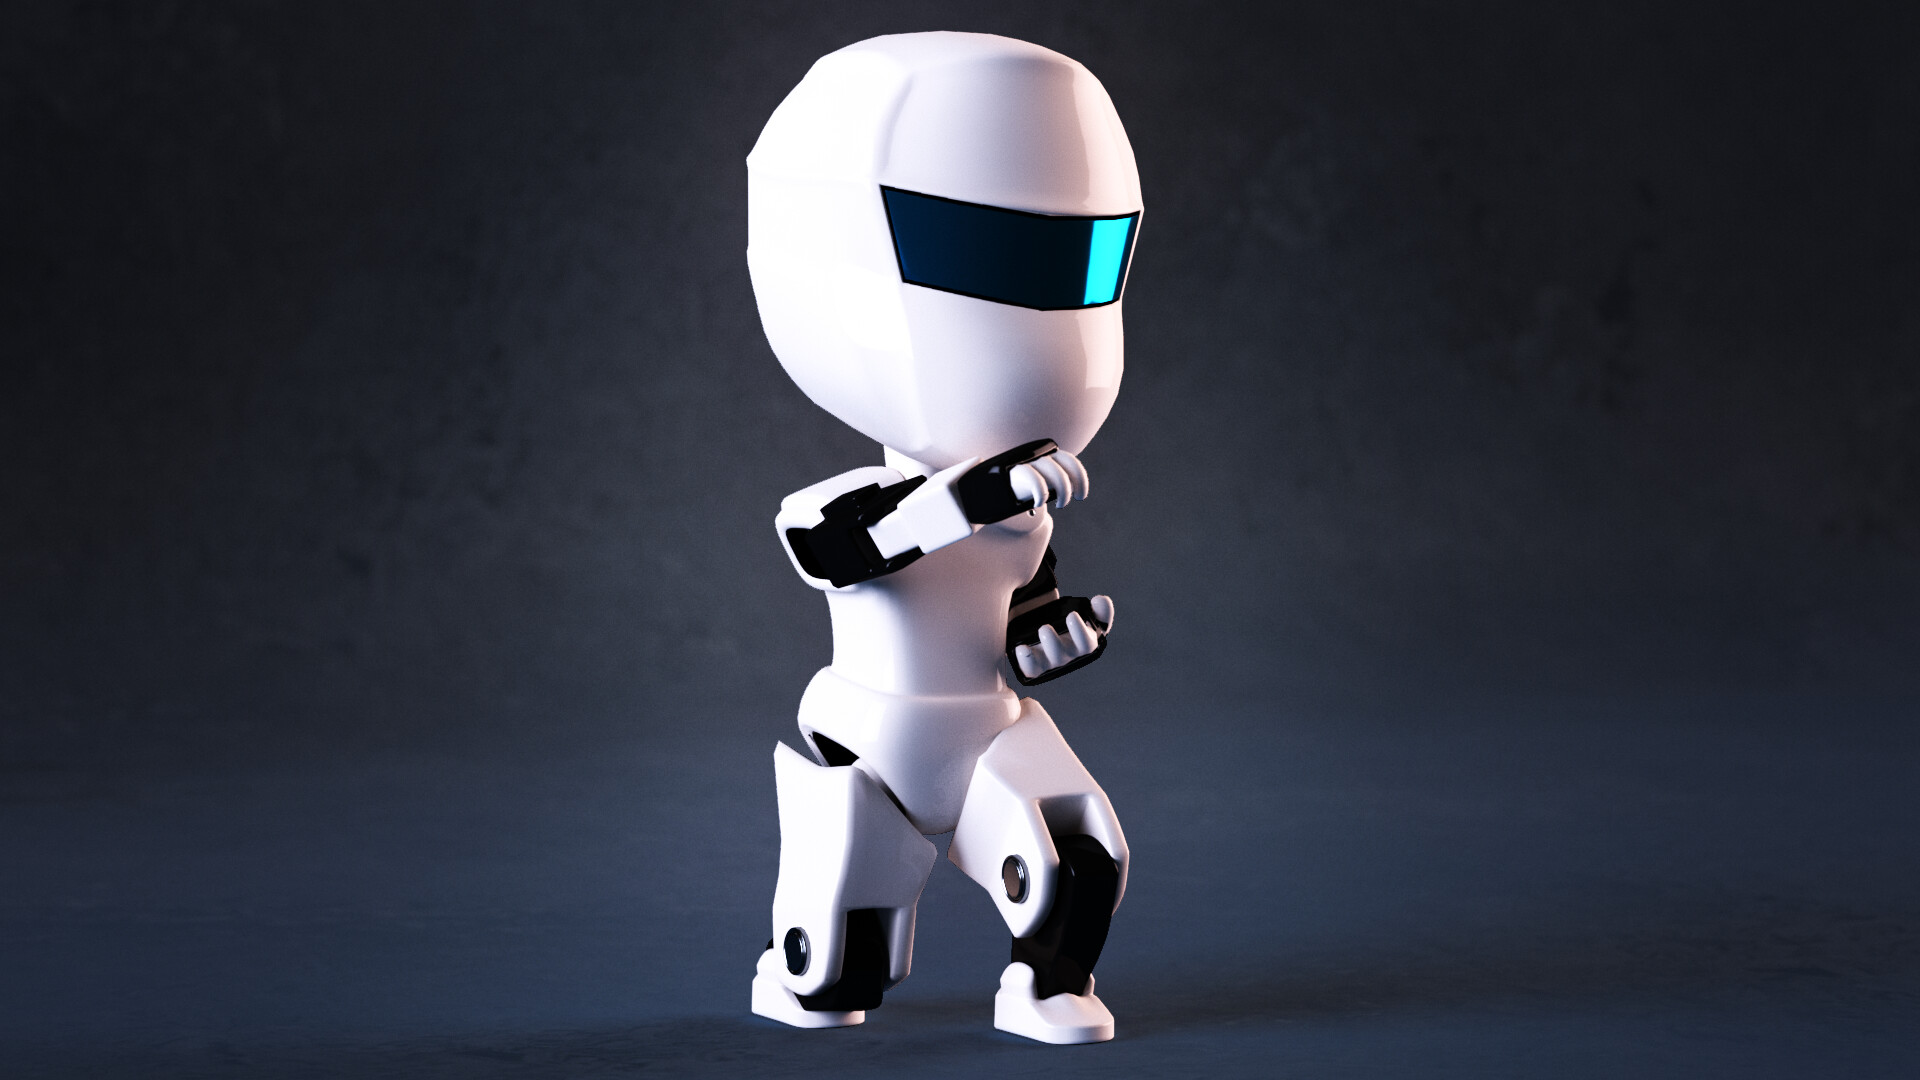 Bạn đang tìm kiếm một món đồ chơi robot đáng yêu? Hãy tìm hiểu về Bromo chibi robot. Chi tiết rất tinh xảo và các bộ phận cũng rất chắc chắn. Đến xem nó và khám phá thế giới đáng yêu của chú robot này.